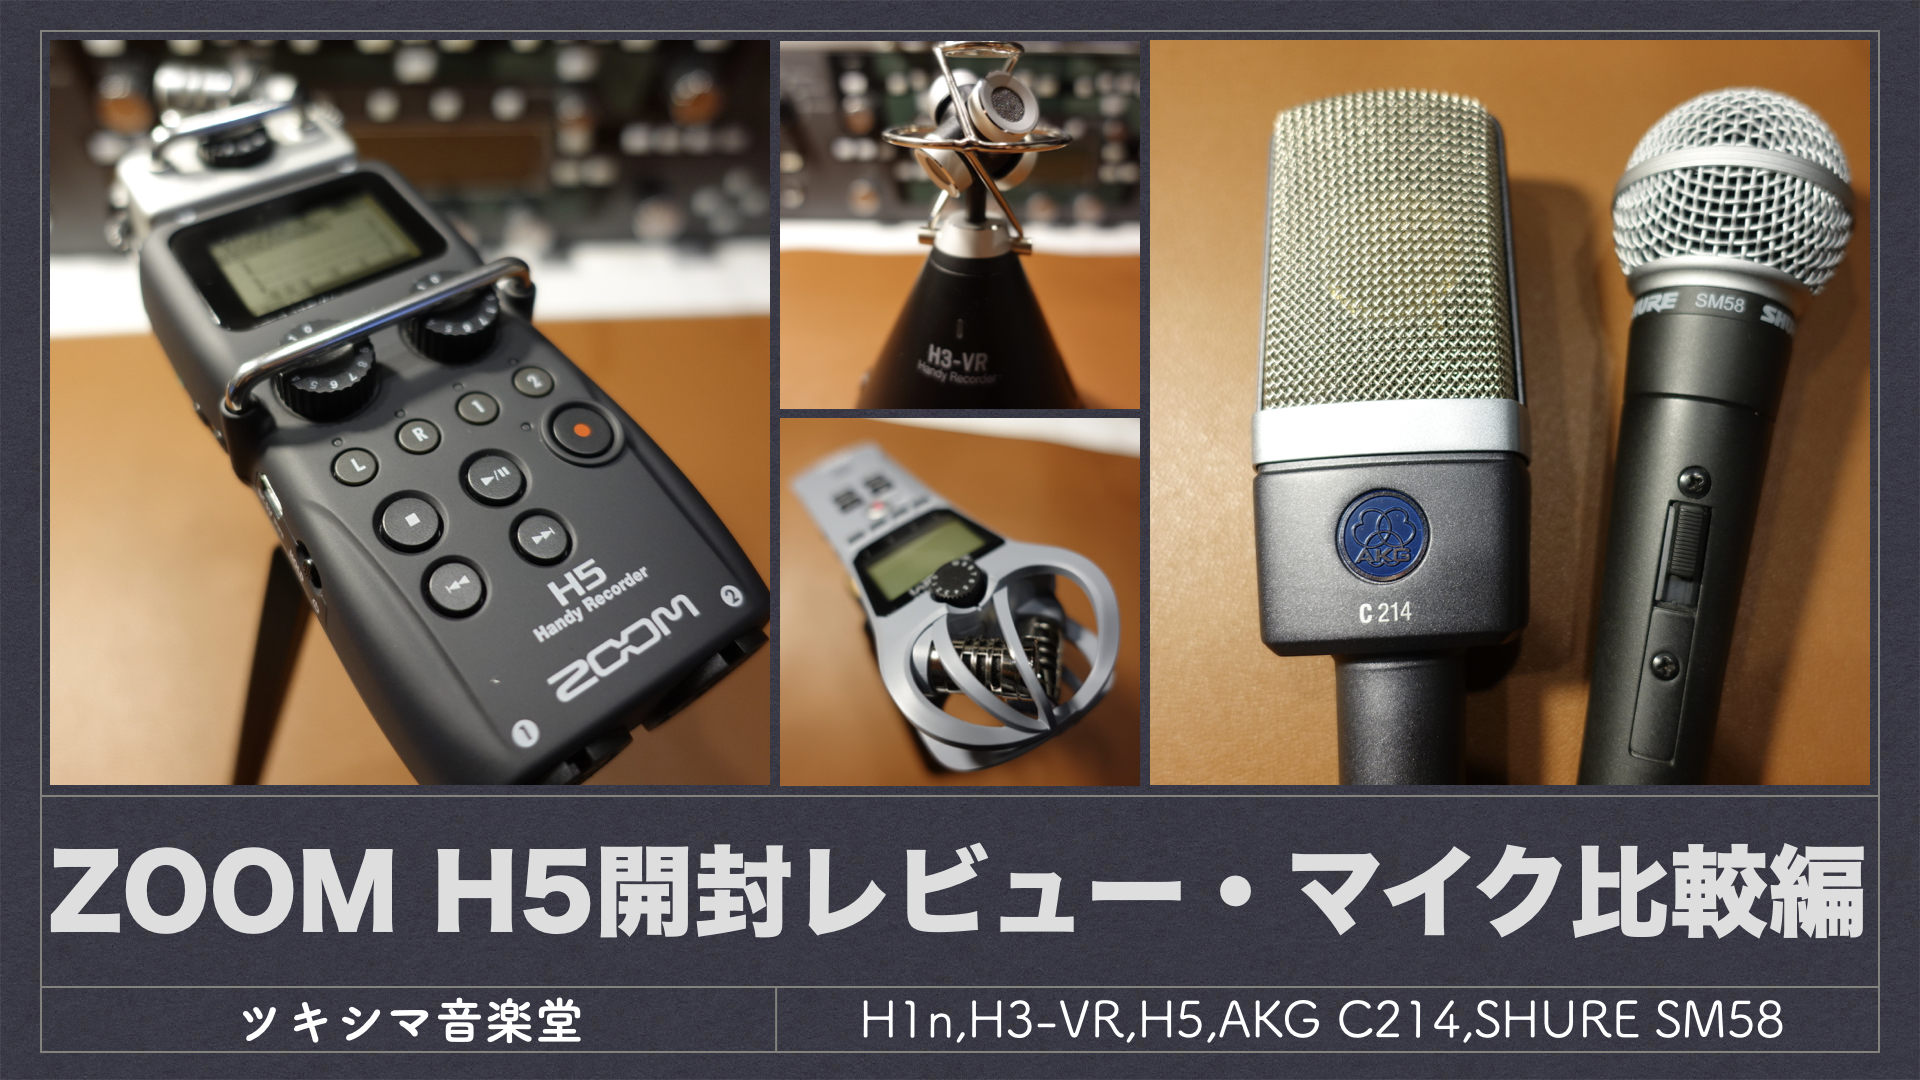 マイク比較編】ZOOM ハンディーレコーダー H5【H1n,H3-VR,H5,AKG C214 